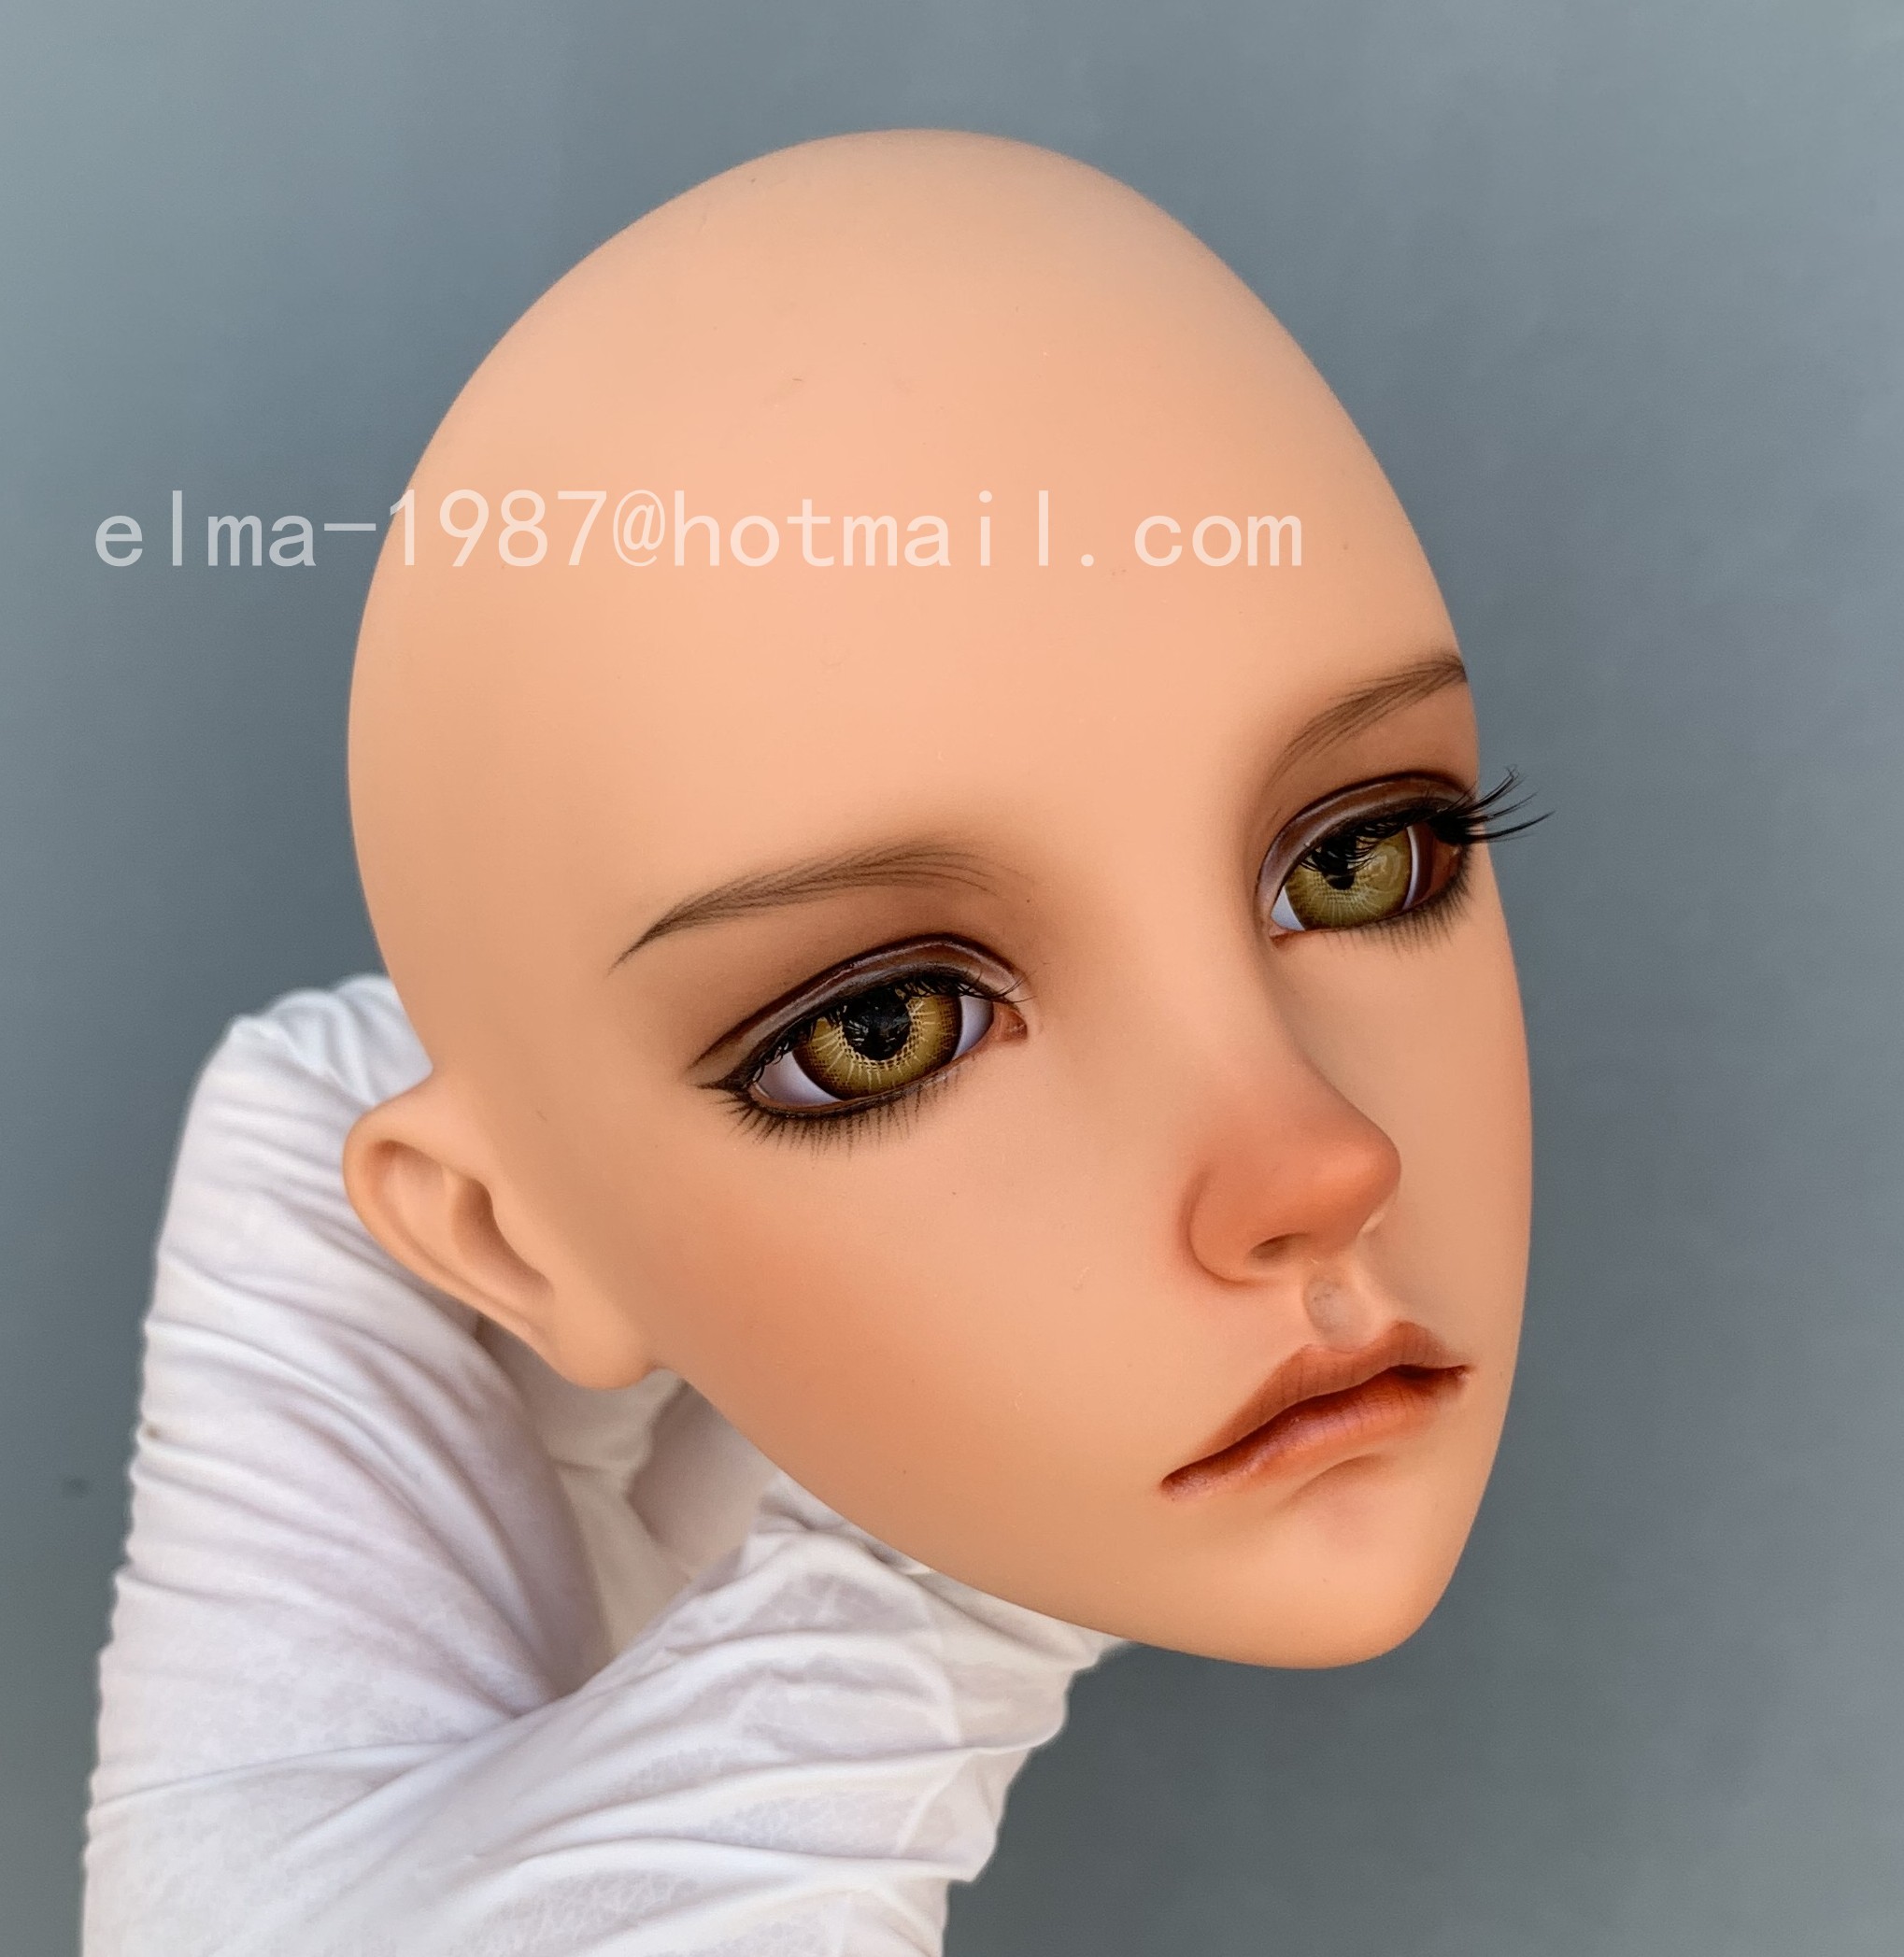 merlin-custom-makeup_1.jpg